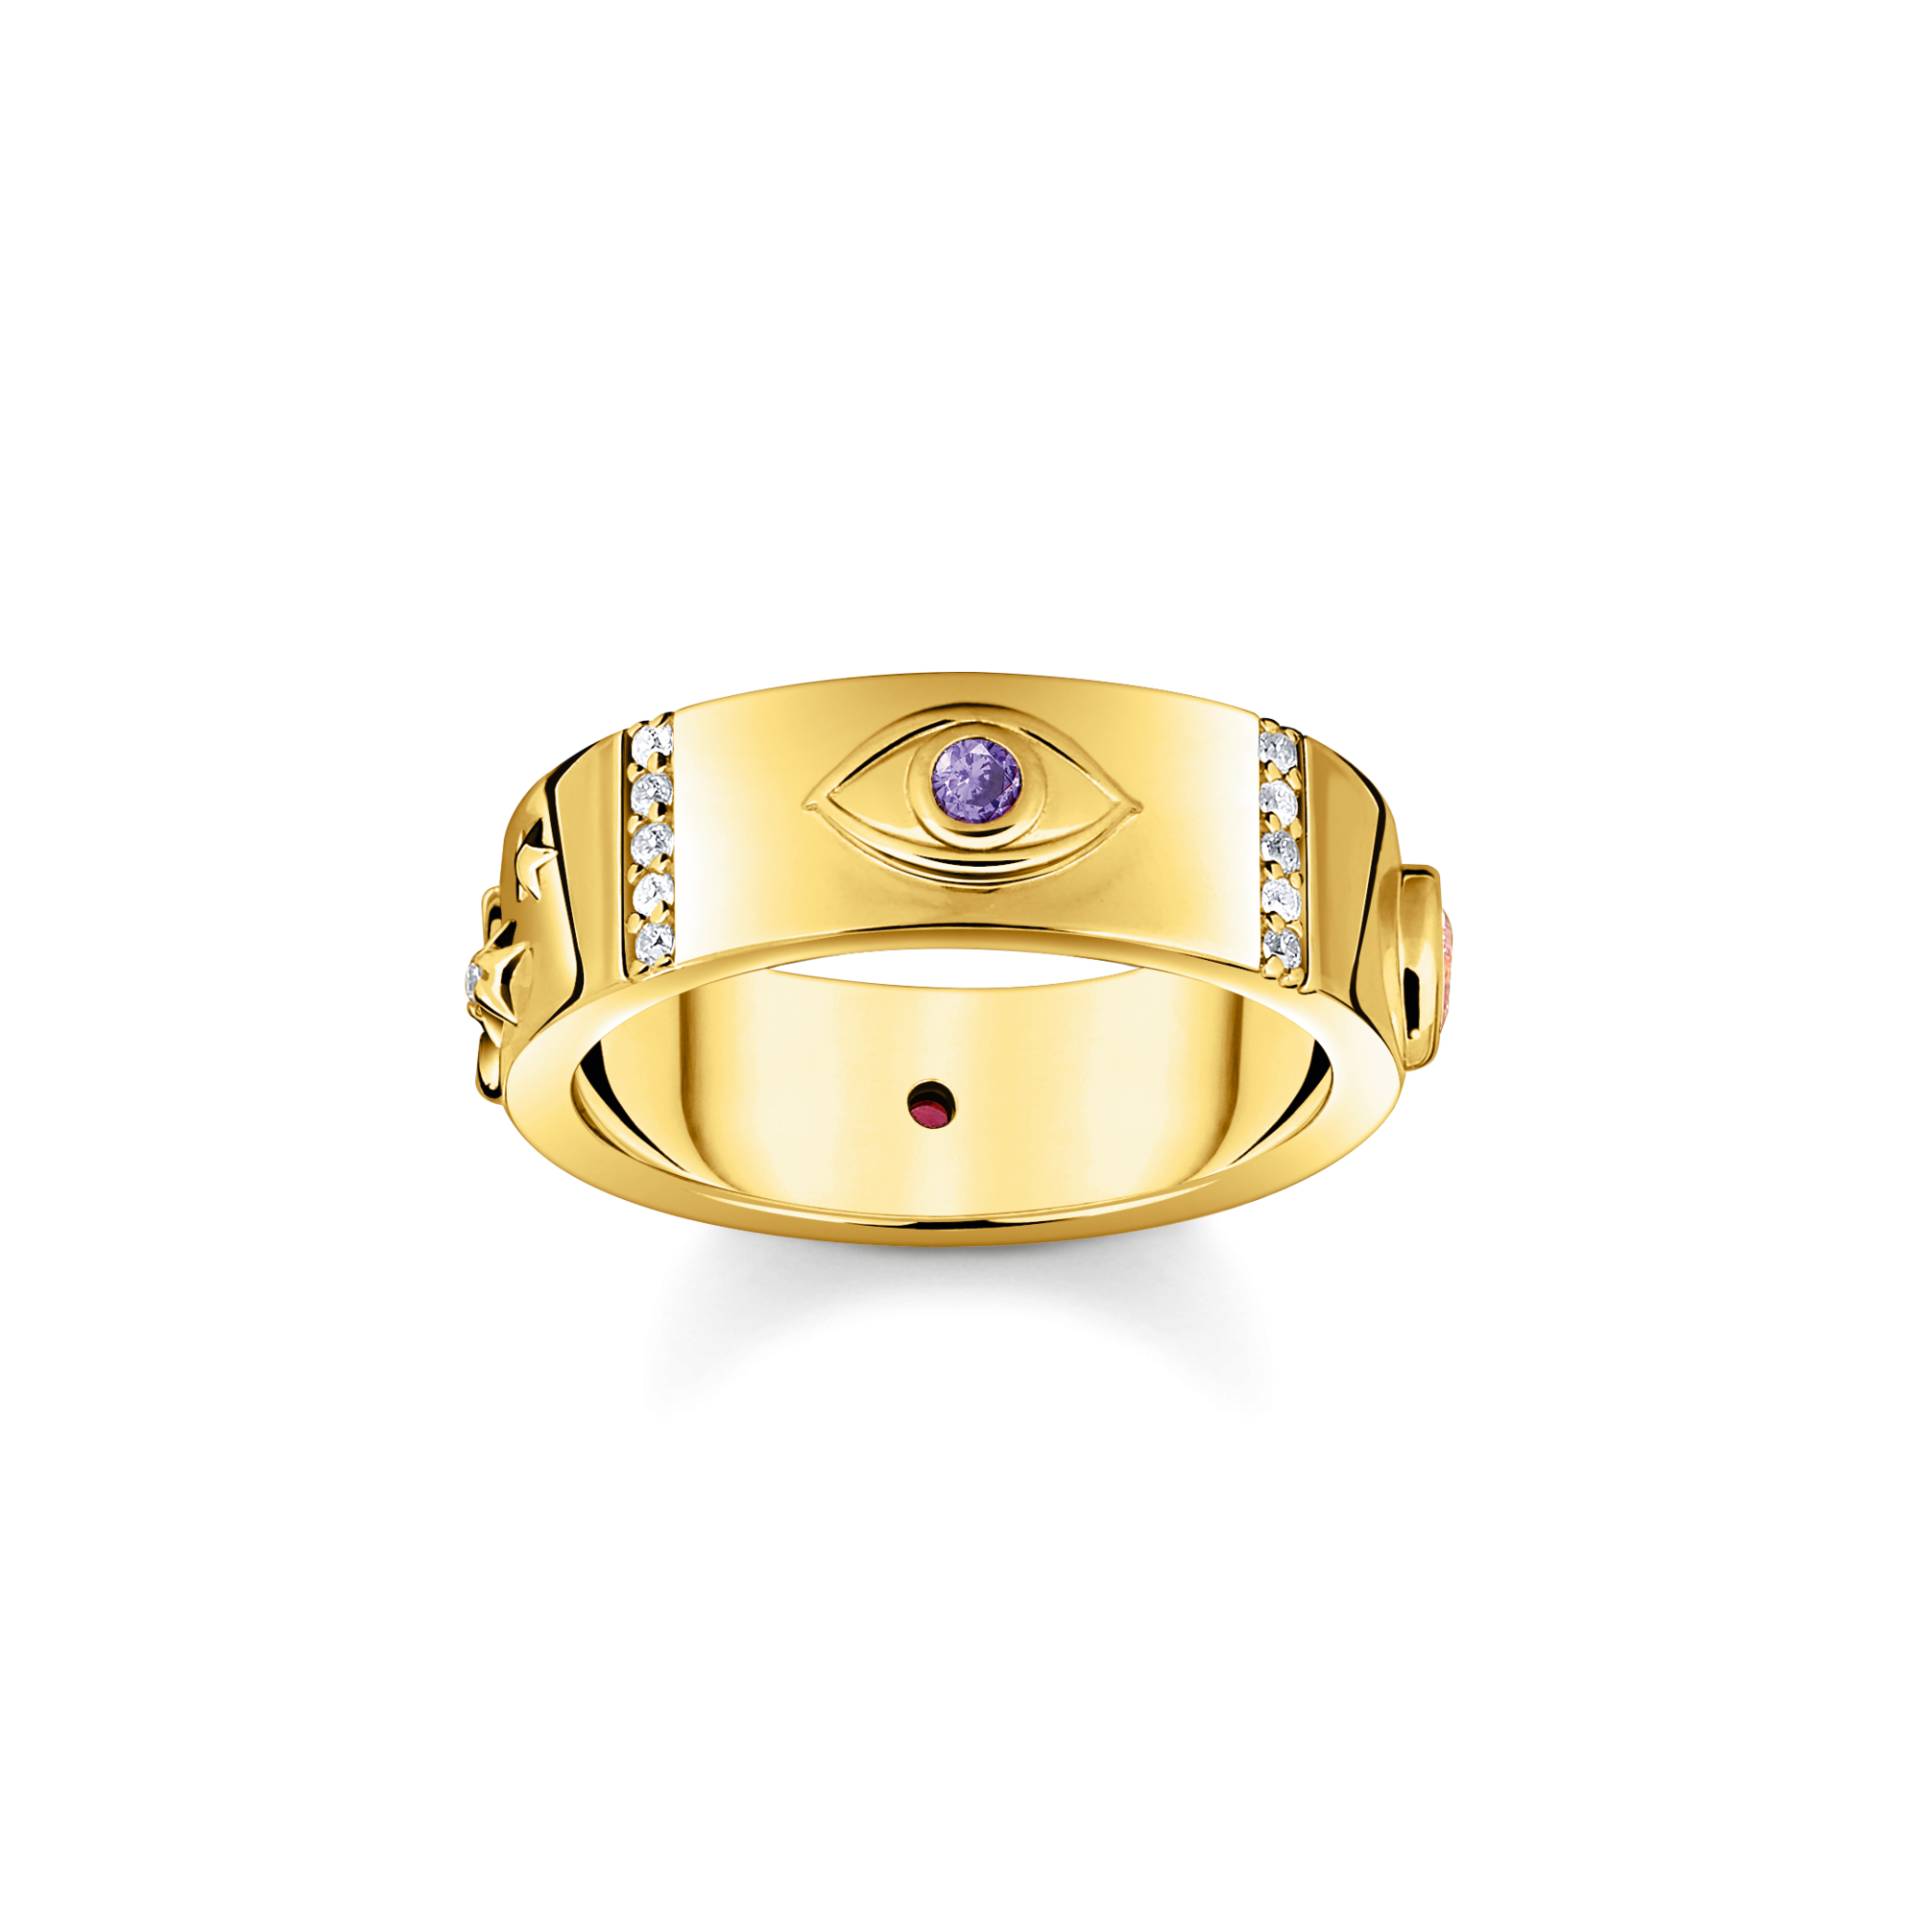 Thomas Sabo Ring mit kosmischen Symbolen und bunten Steinen vergoldet mehrfarbig TR2439-995-7-48 von Thomas Sabo